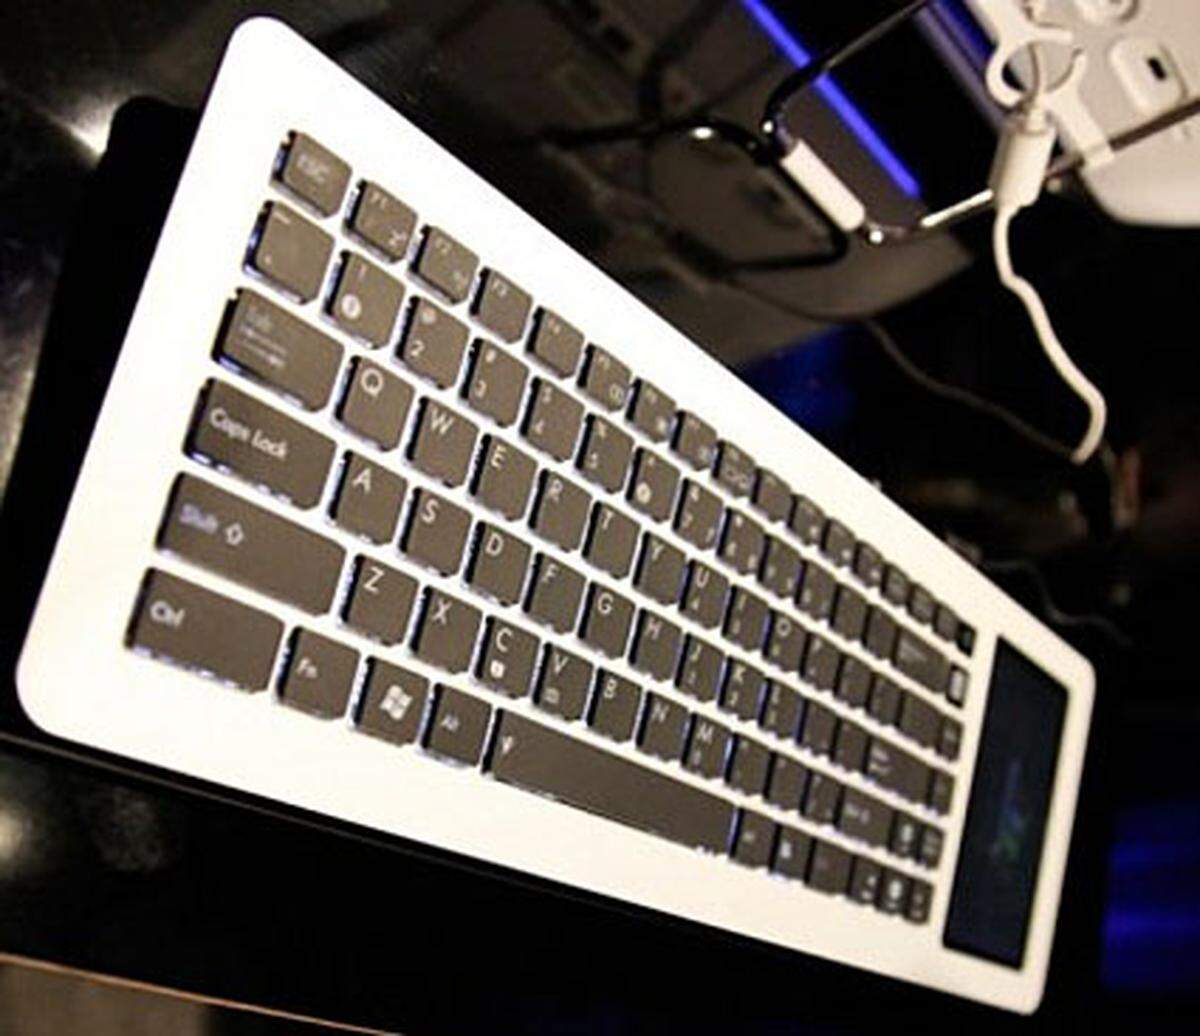 Diese Tastatur von Asus ist ein vollwertiger PC. Das CES-Highlight verfügt über ein 5-Zoll-Touch-Display, Lautsprecher und WLAN. Leider handelt es sich bisher nur um ein Konzept. Wann das Eee Keyboard marktreif ist, ist noch offen.